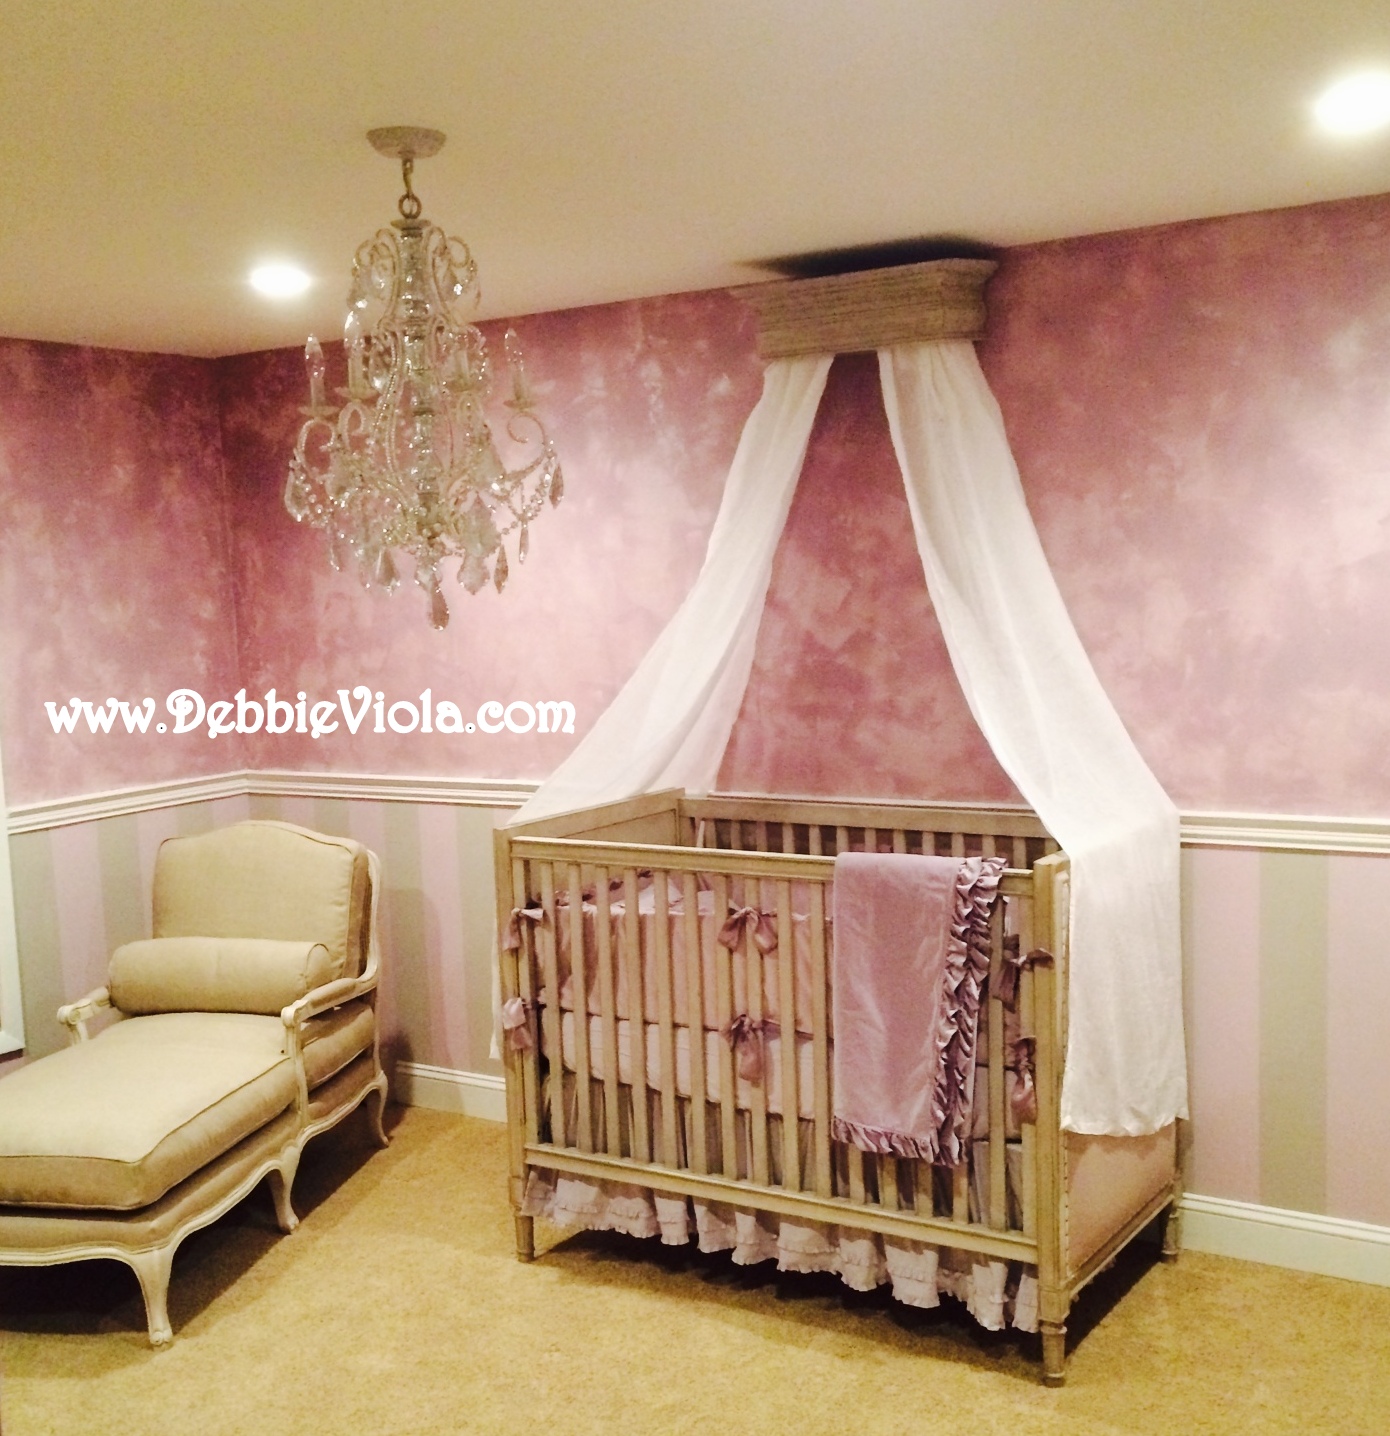 Shimmered plaster walls, gray and lavendar stripes; glazed molding